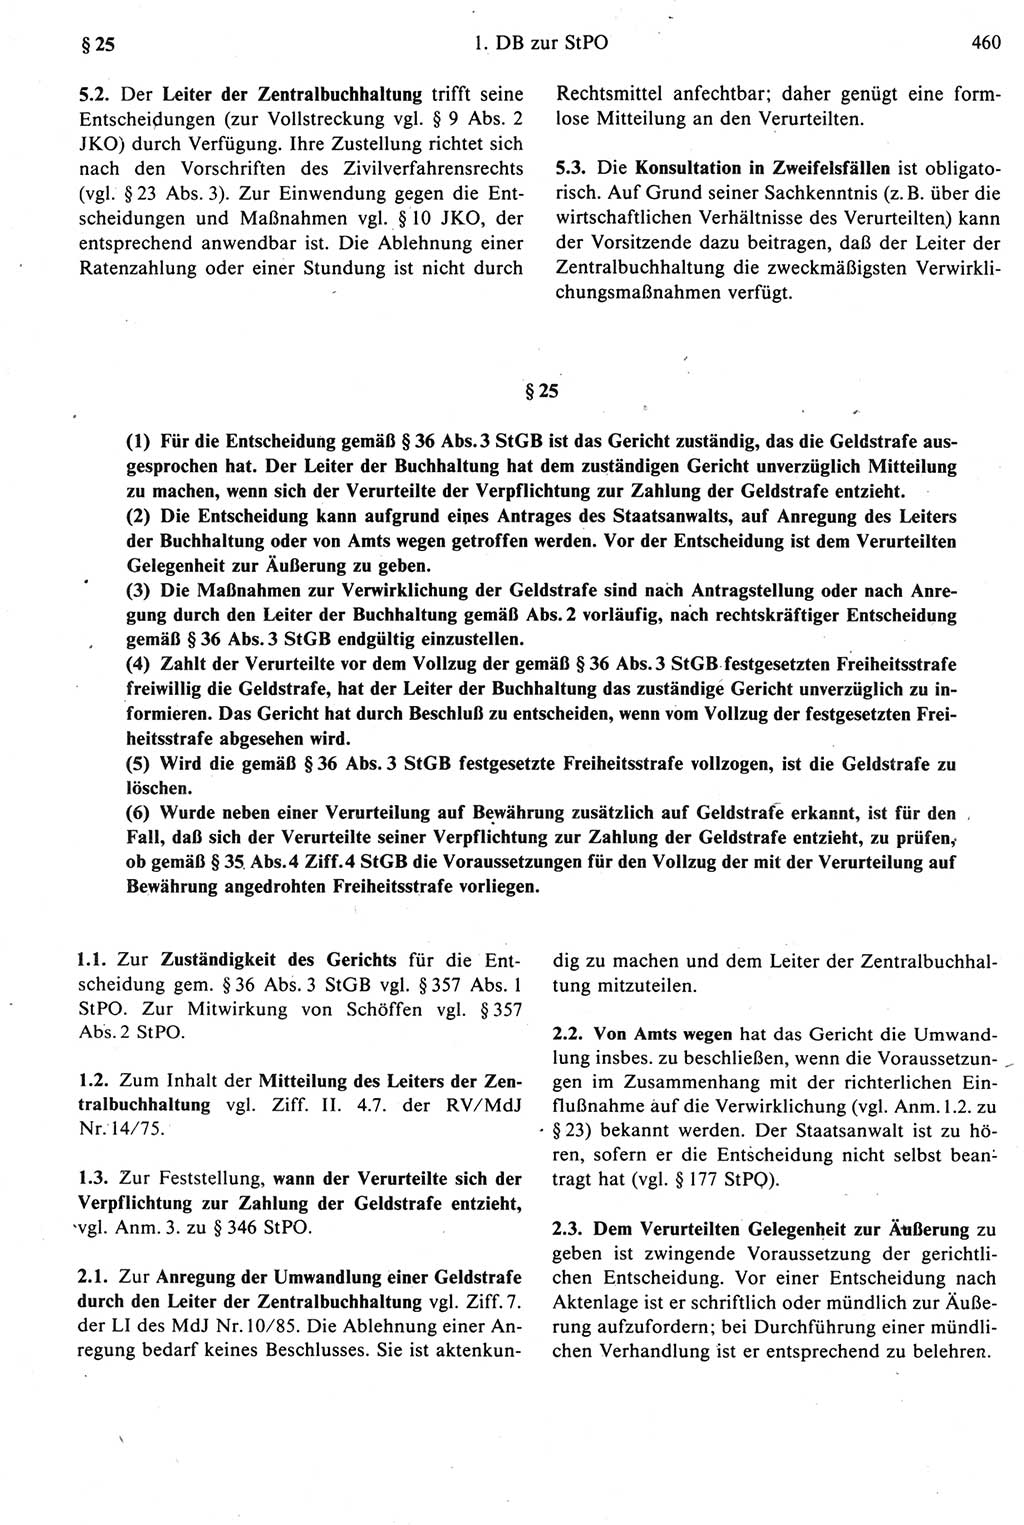 Strafprozeßrecht der DDR [Deutsche Demokratische Republik], Kommentar zur Strafprozeßordnung (StPO) 1987, Seite 460 (Strafprozeßr. DDR Komm. StPO 1987, S. 460)